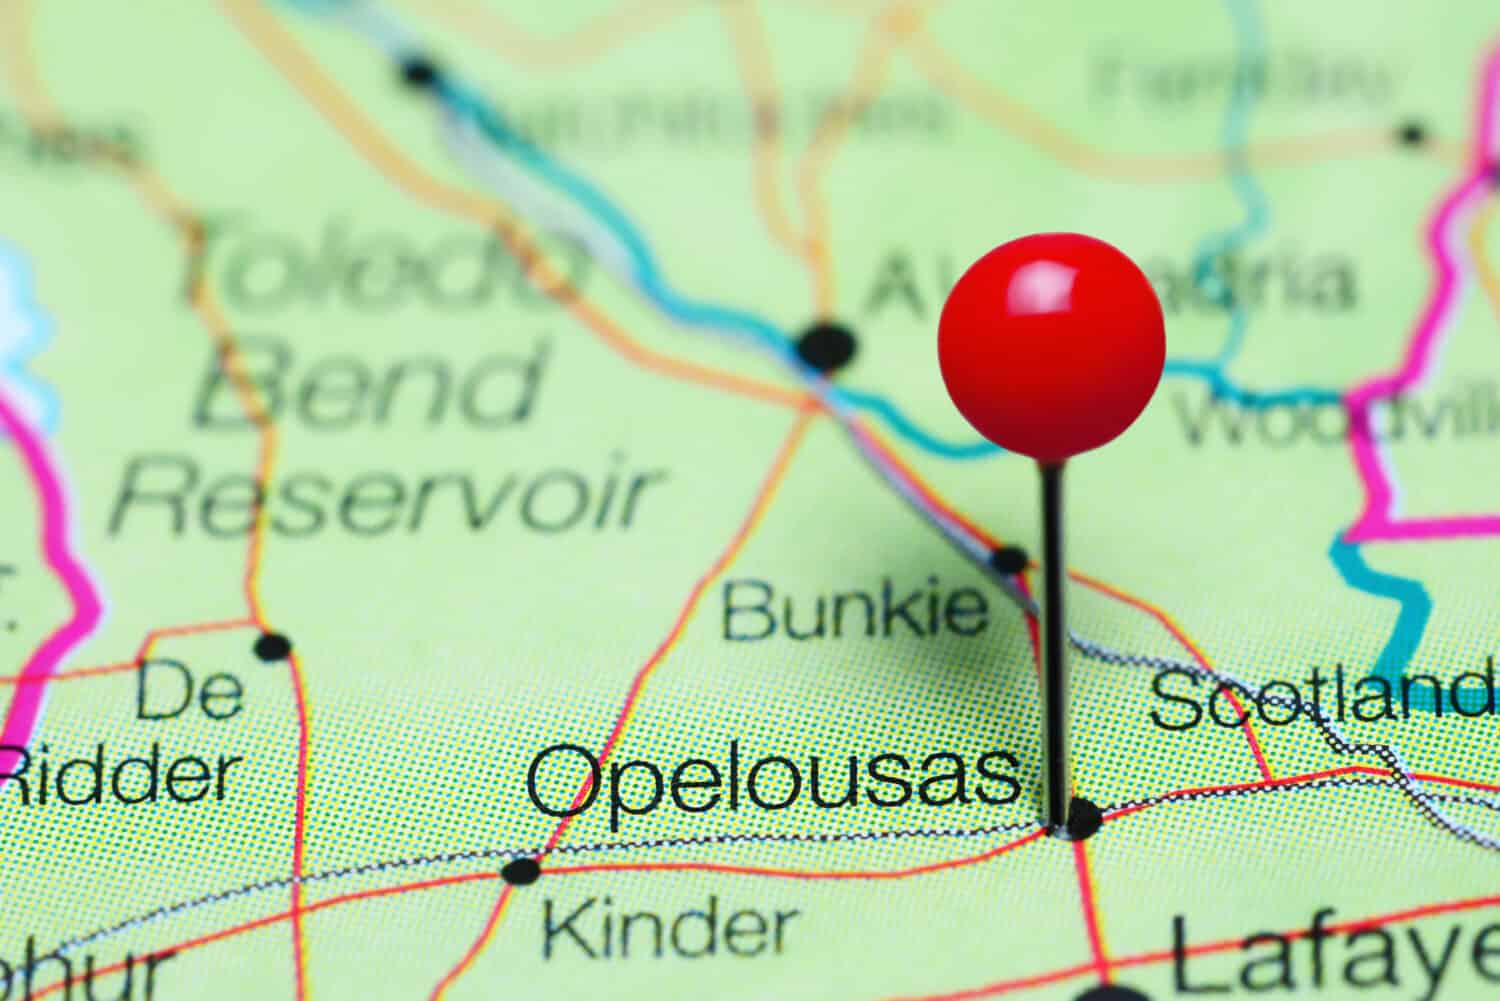 Opelousas imperniata su una mappa della Louisiana, Stati Uniti d'America